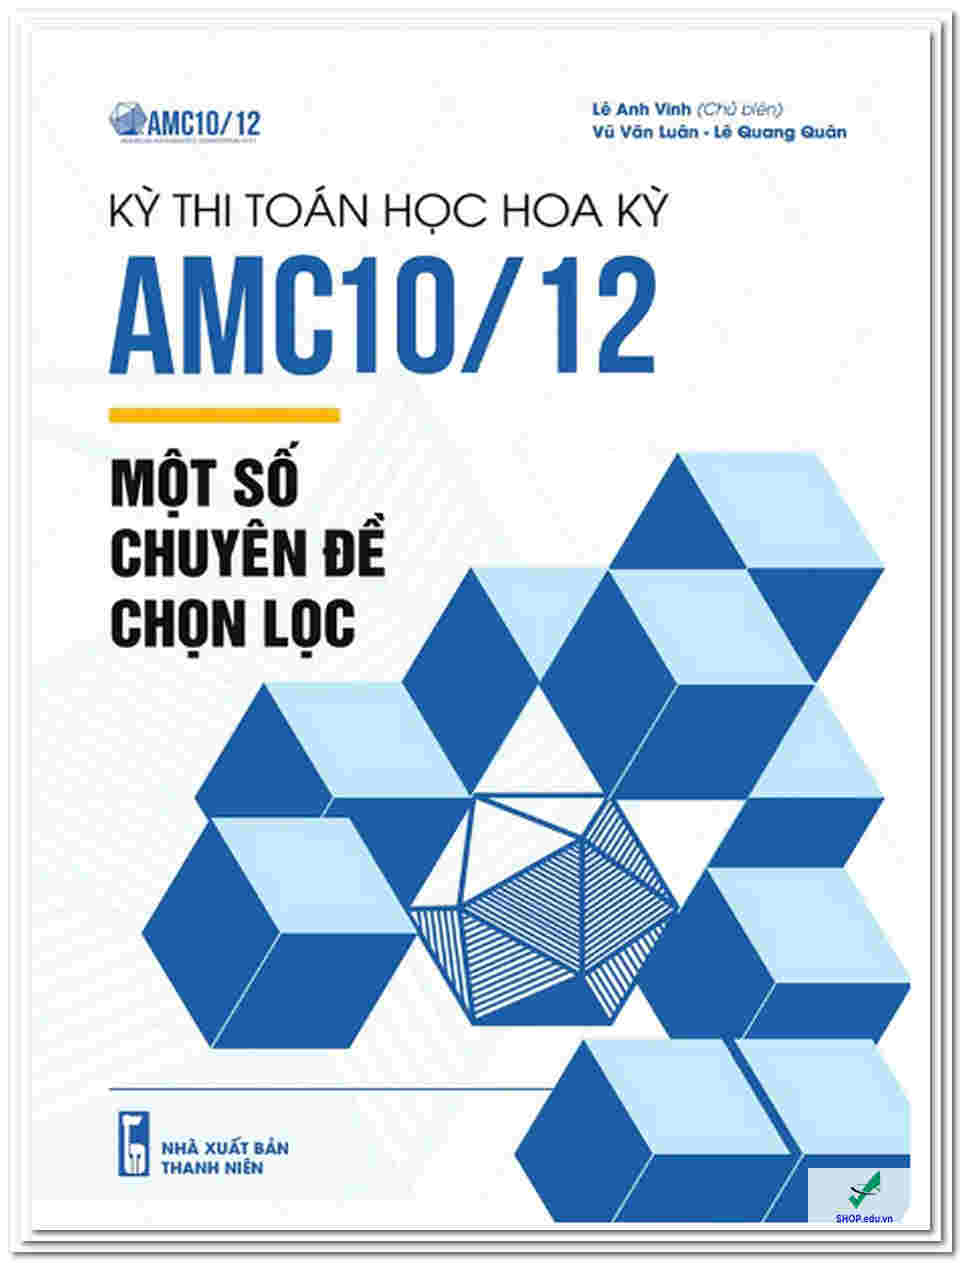 Kỳ thi toán học Hoa Kỳ AMC10/12 – Một số chuyên đề chọn lọc